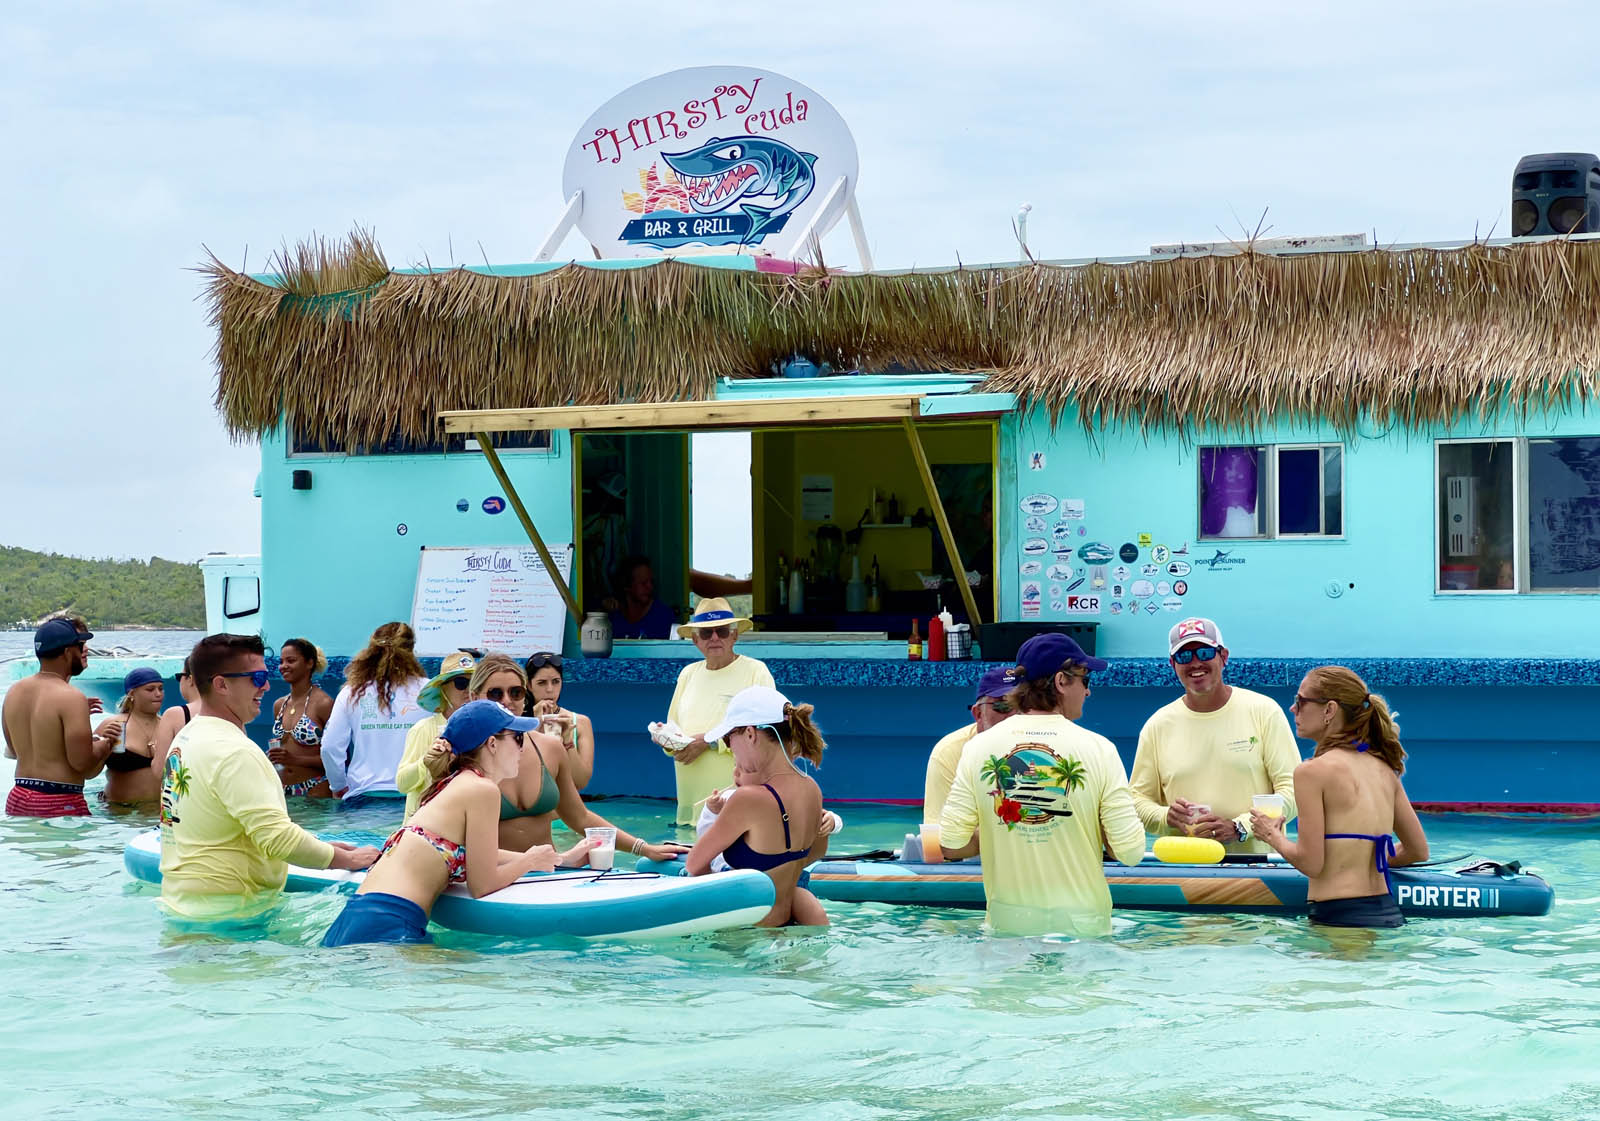 Thirsty Cuba swim up bar at Tahiti Beach